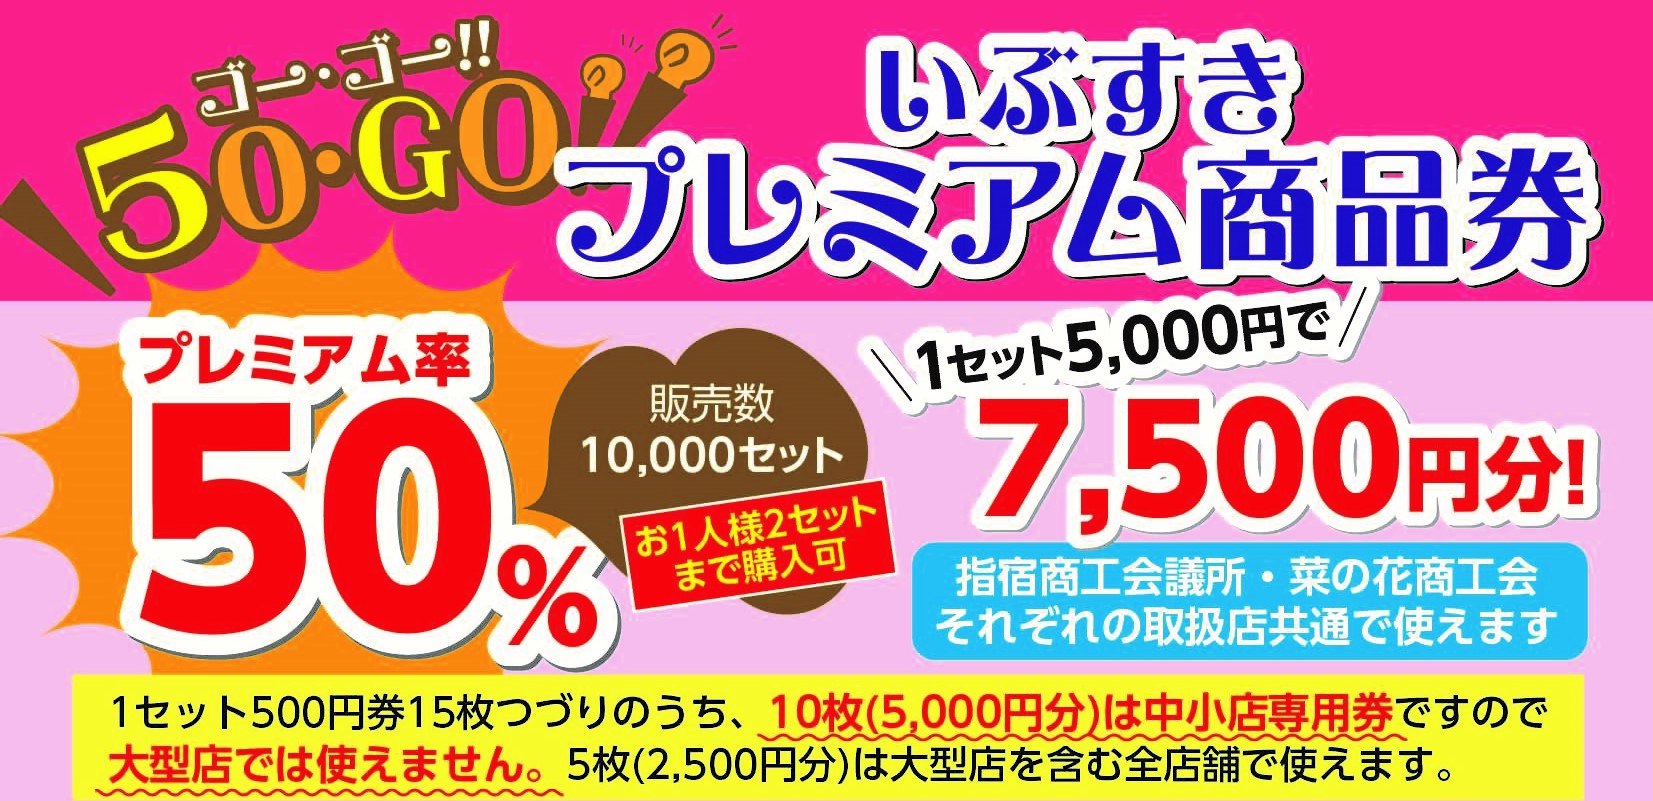 ★50・GO!!いぶすきプレミアム商品券バナー.jpg